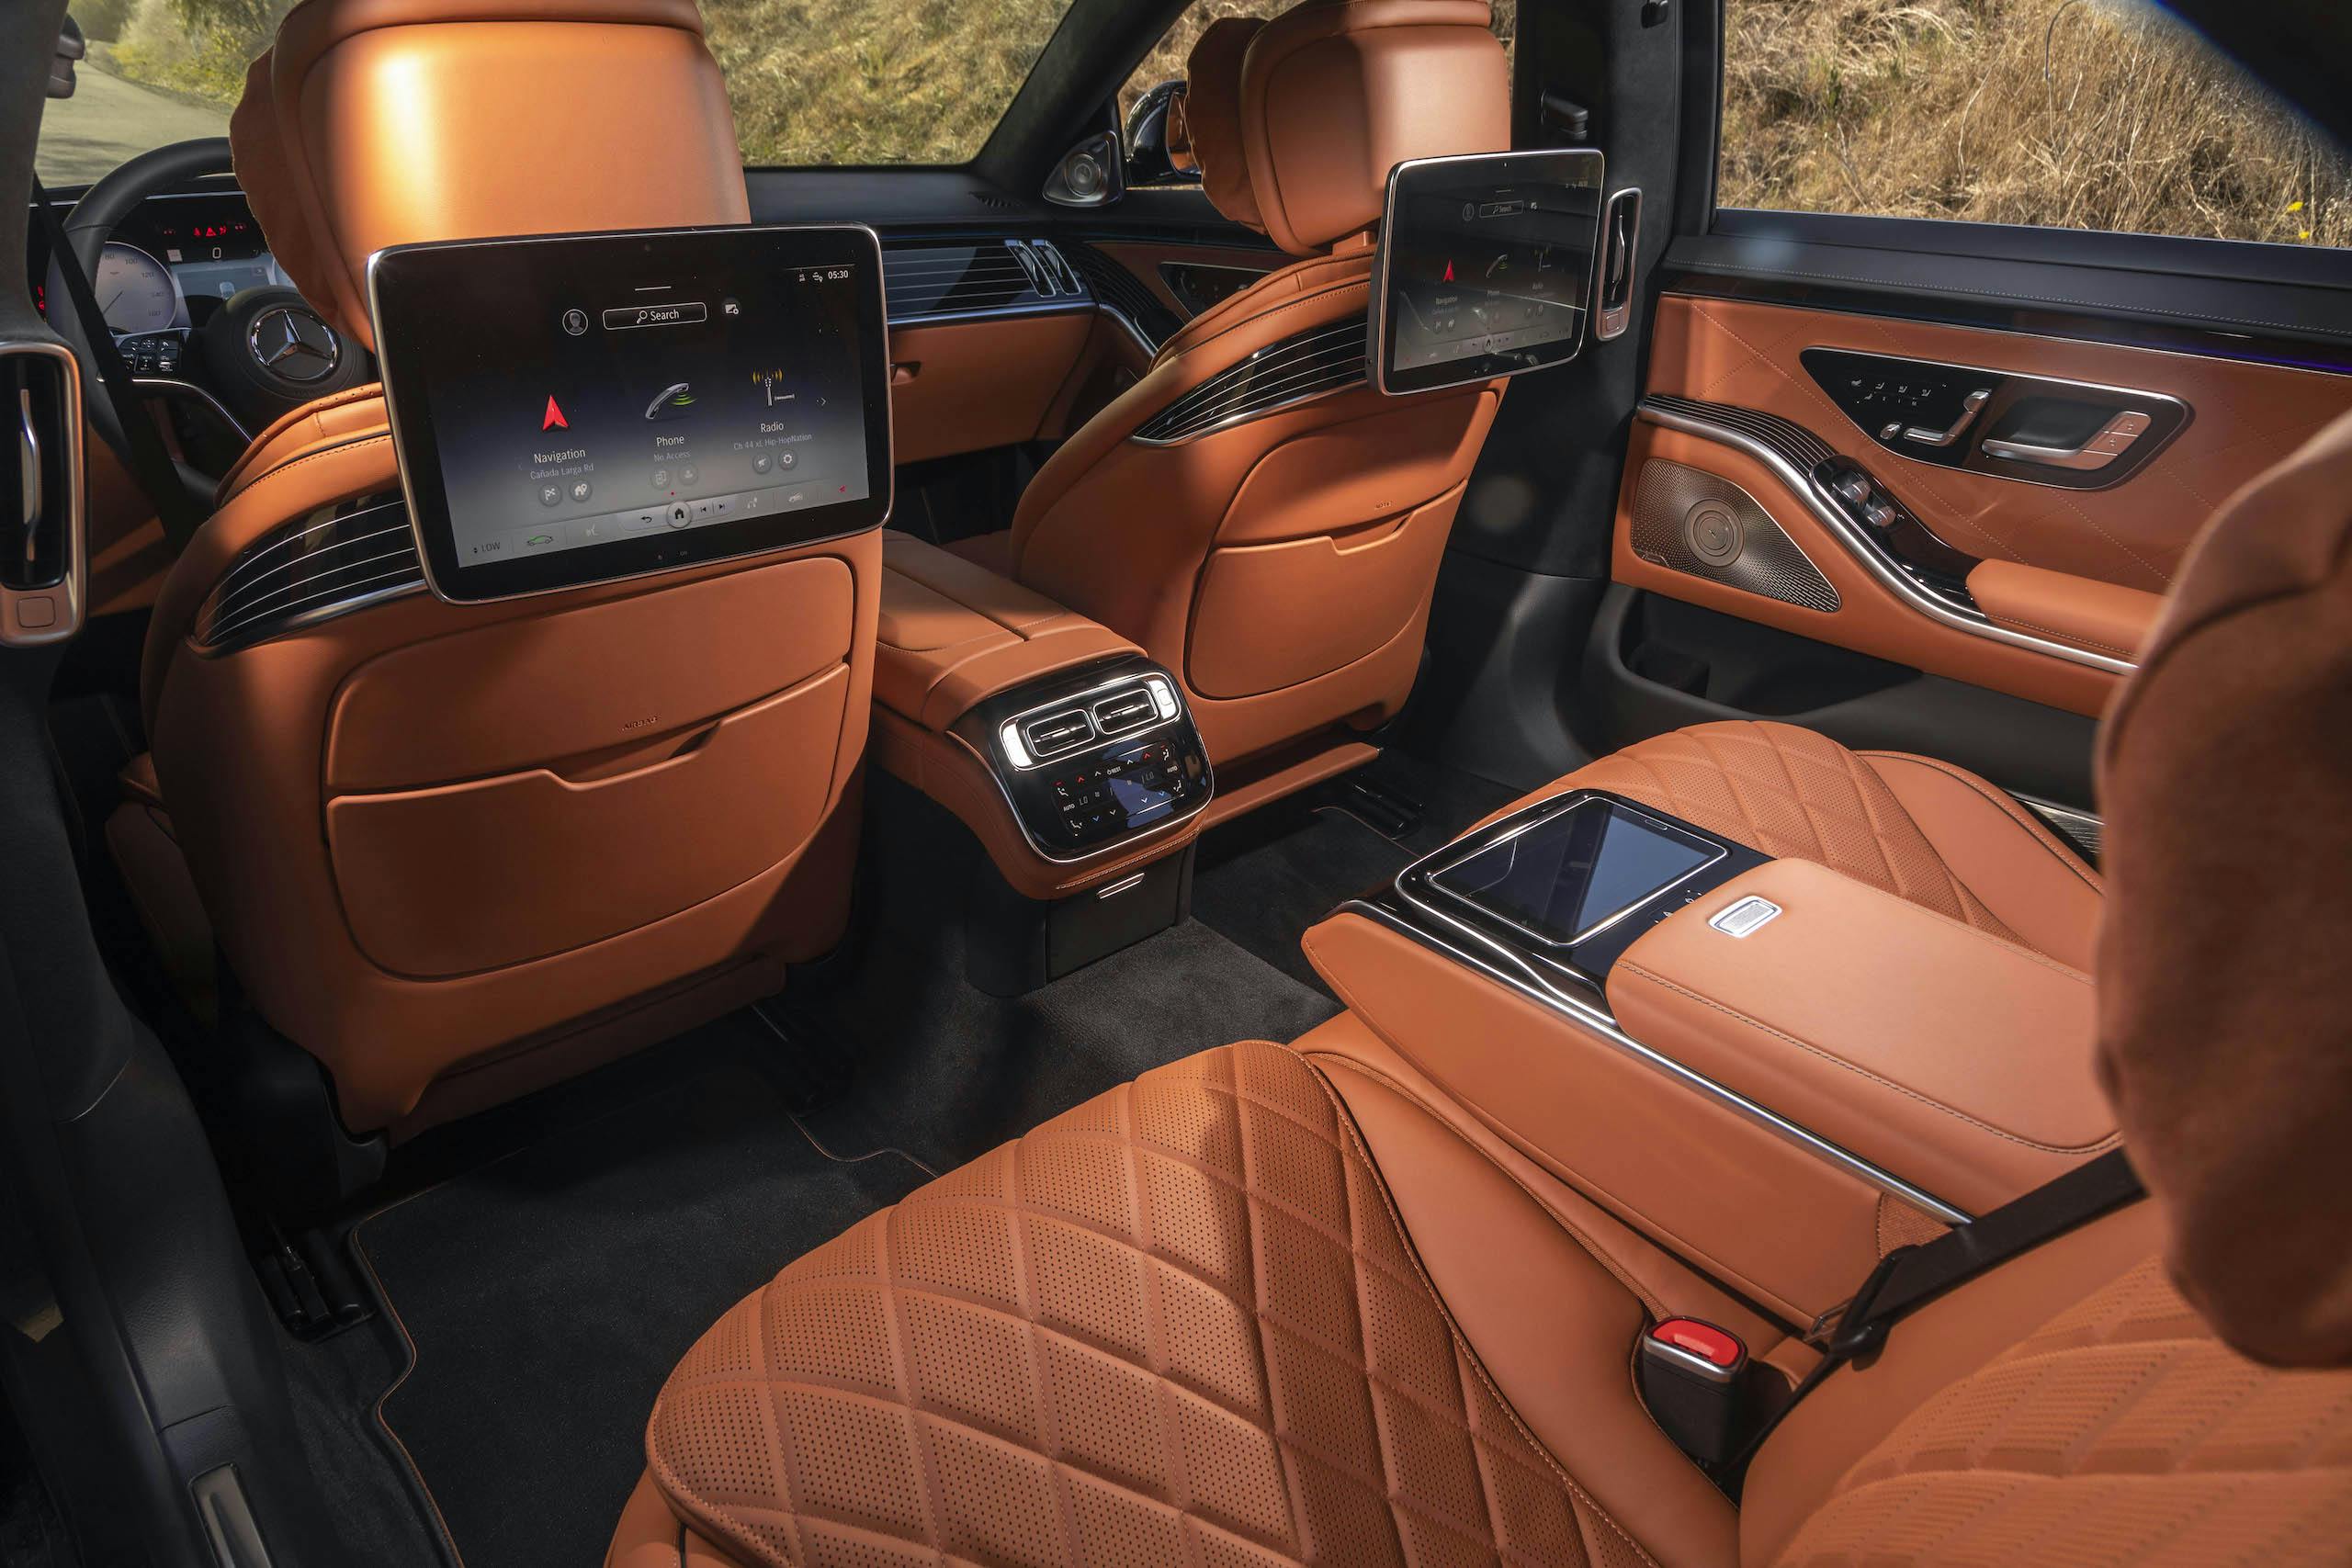 Mercedes Benz-S-Class interior rear screens